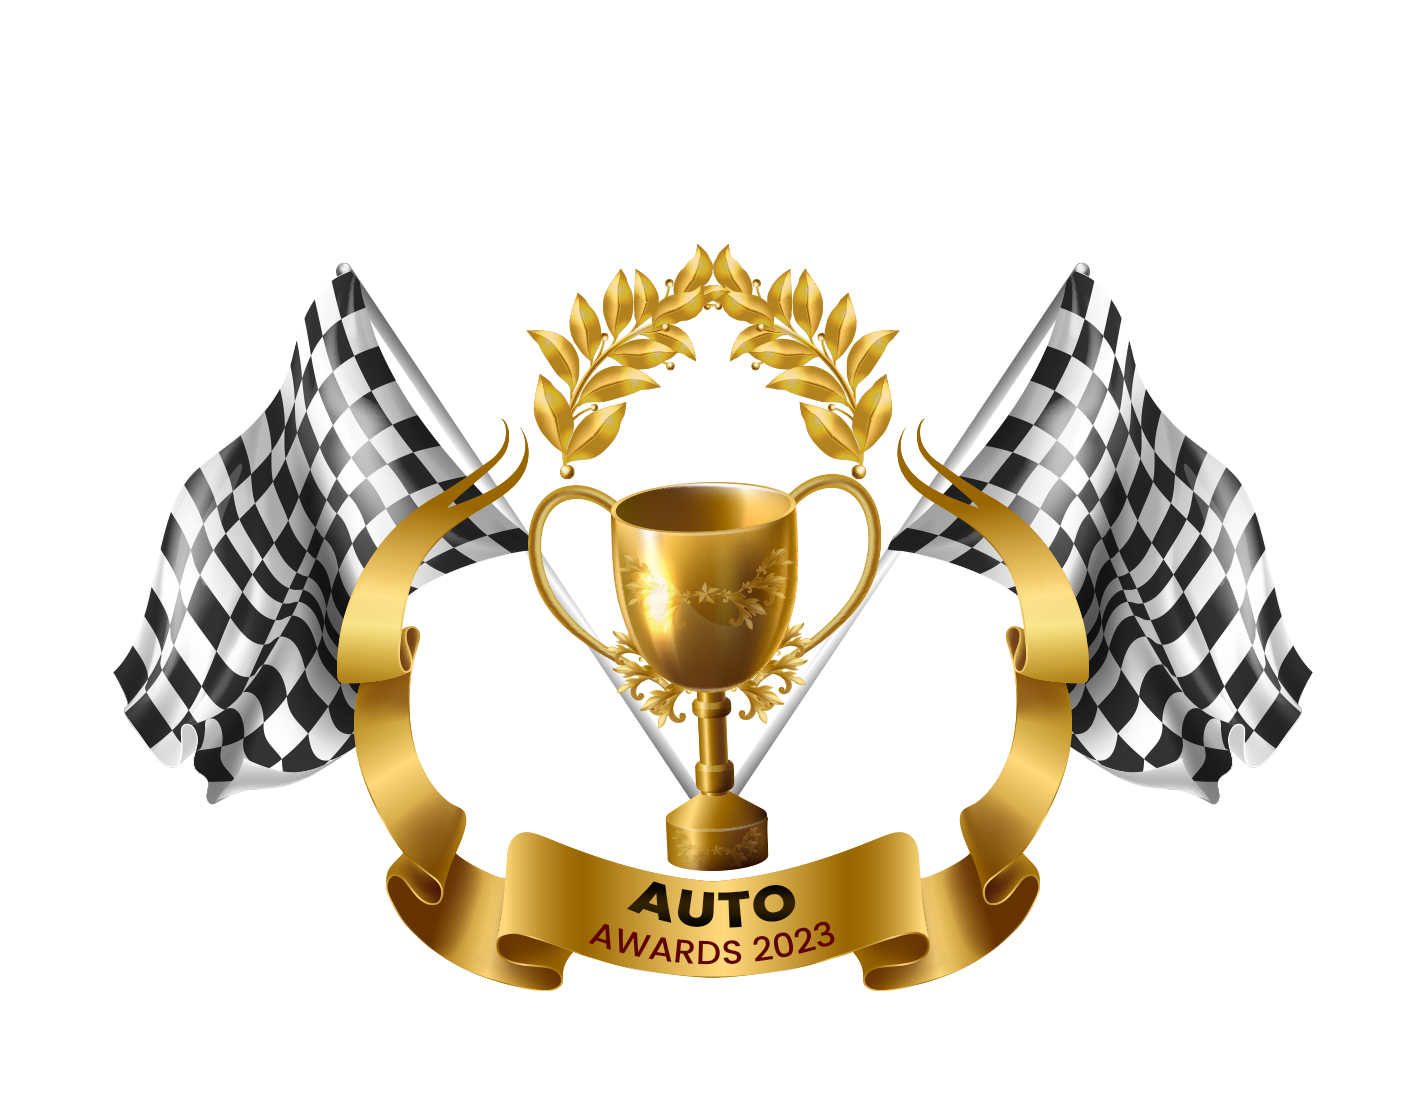 Auto awards 2023